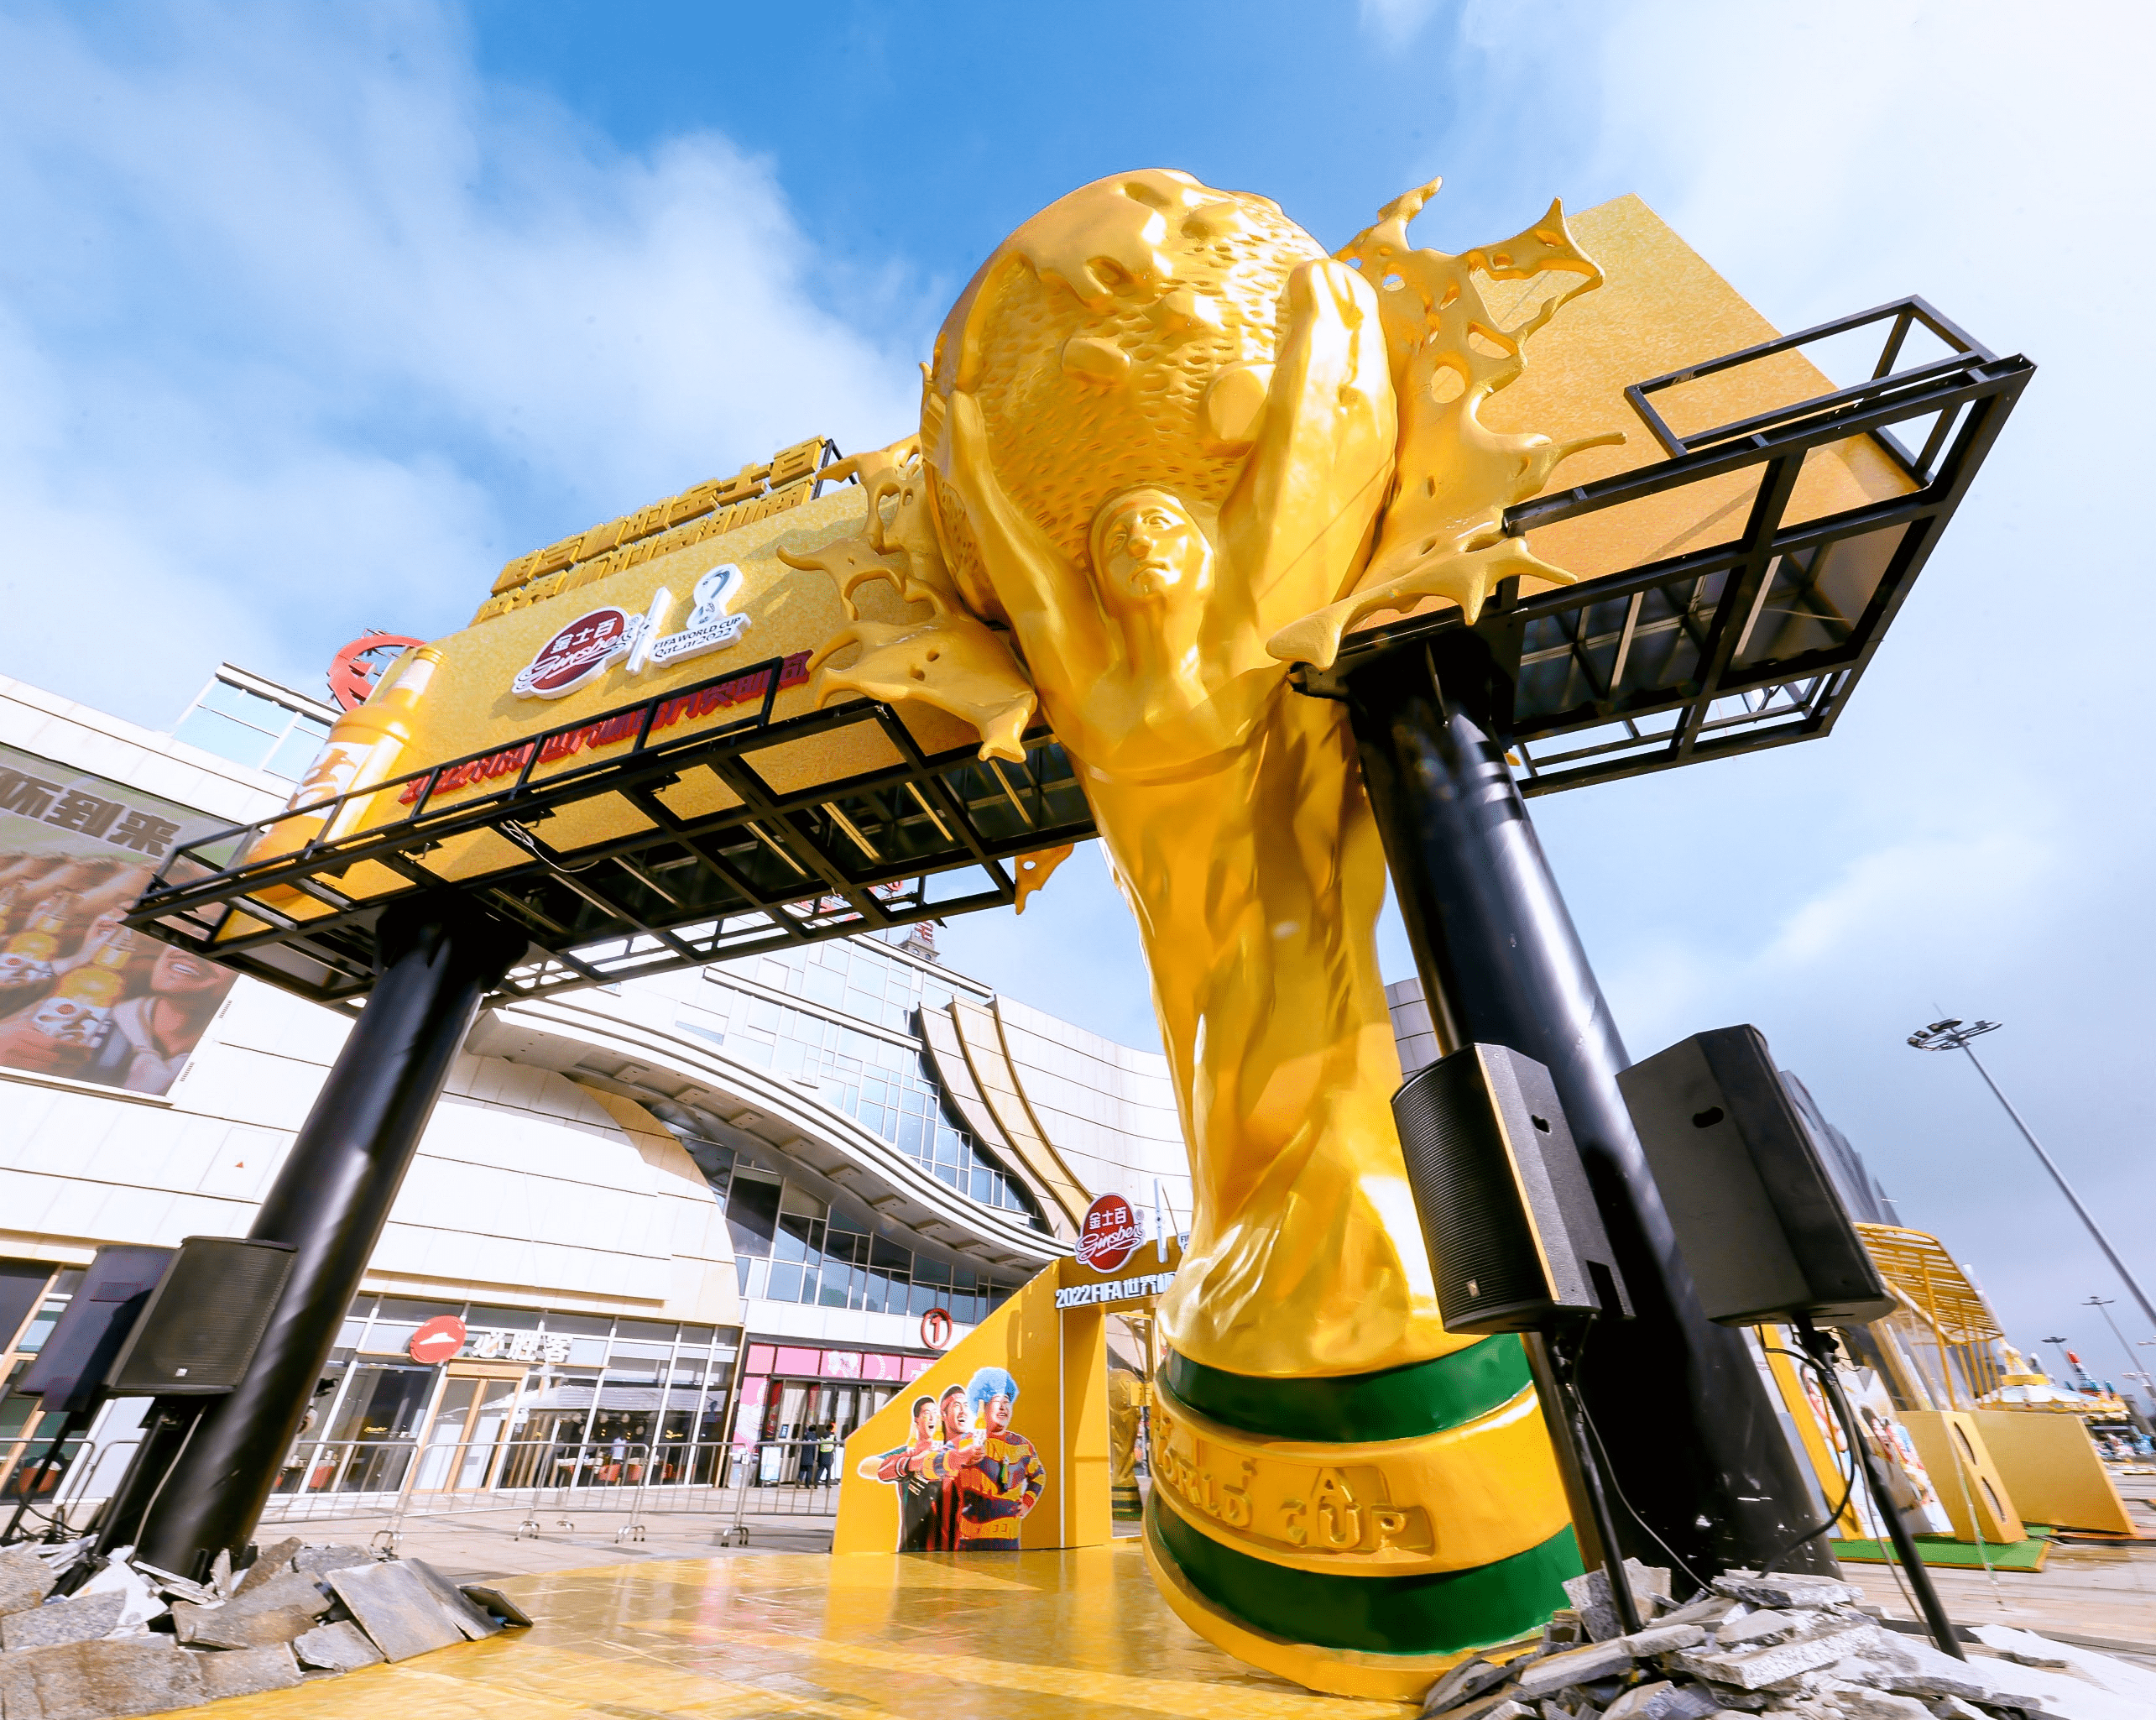 以足球之名 享吉林味道 金士百启动2022世界杯活动